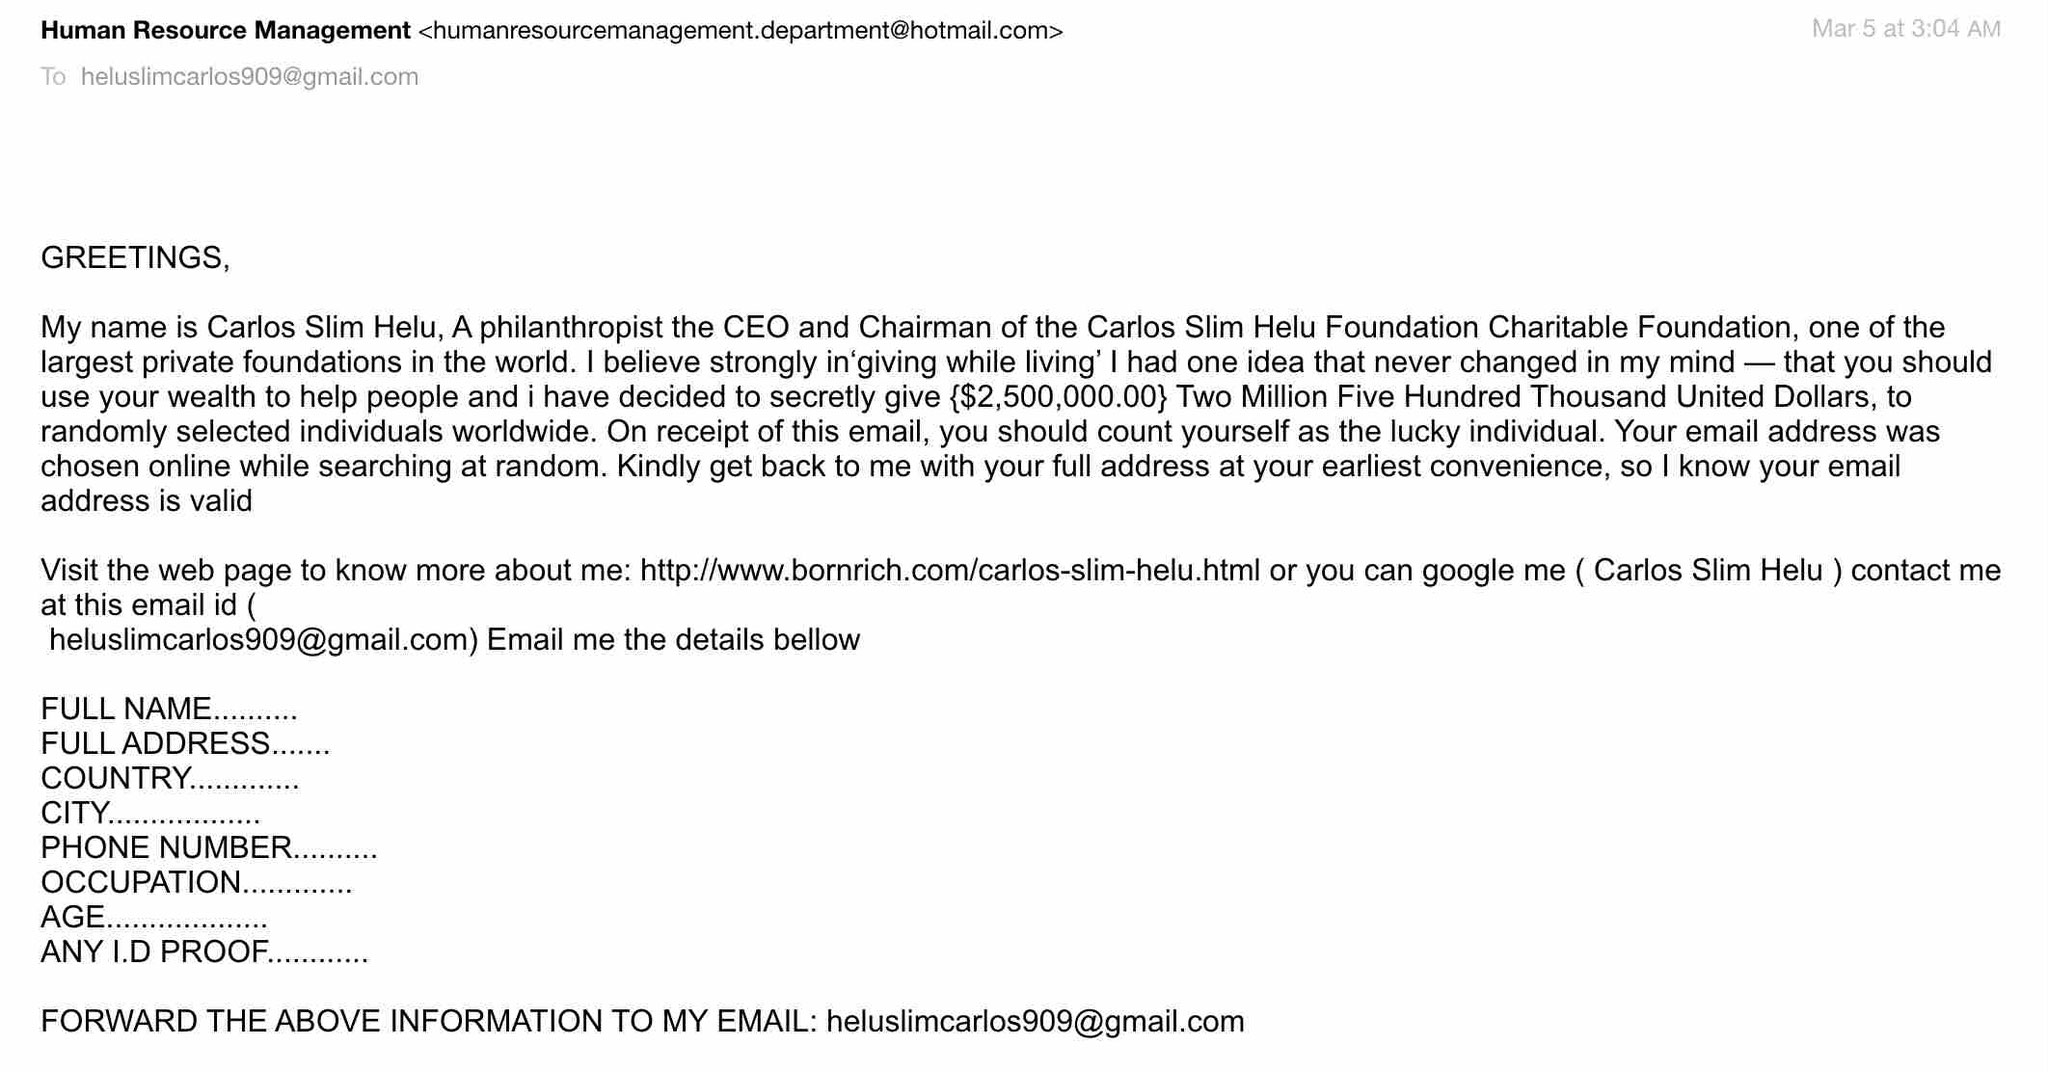 Carlos Slim Helu fraud scam phising email